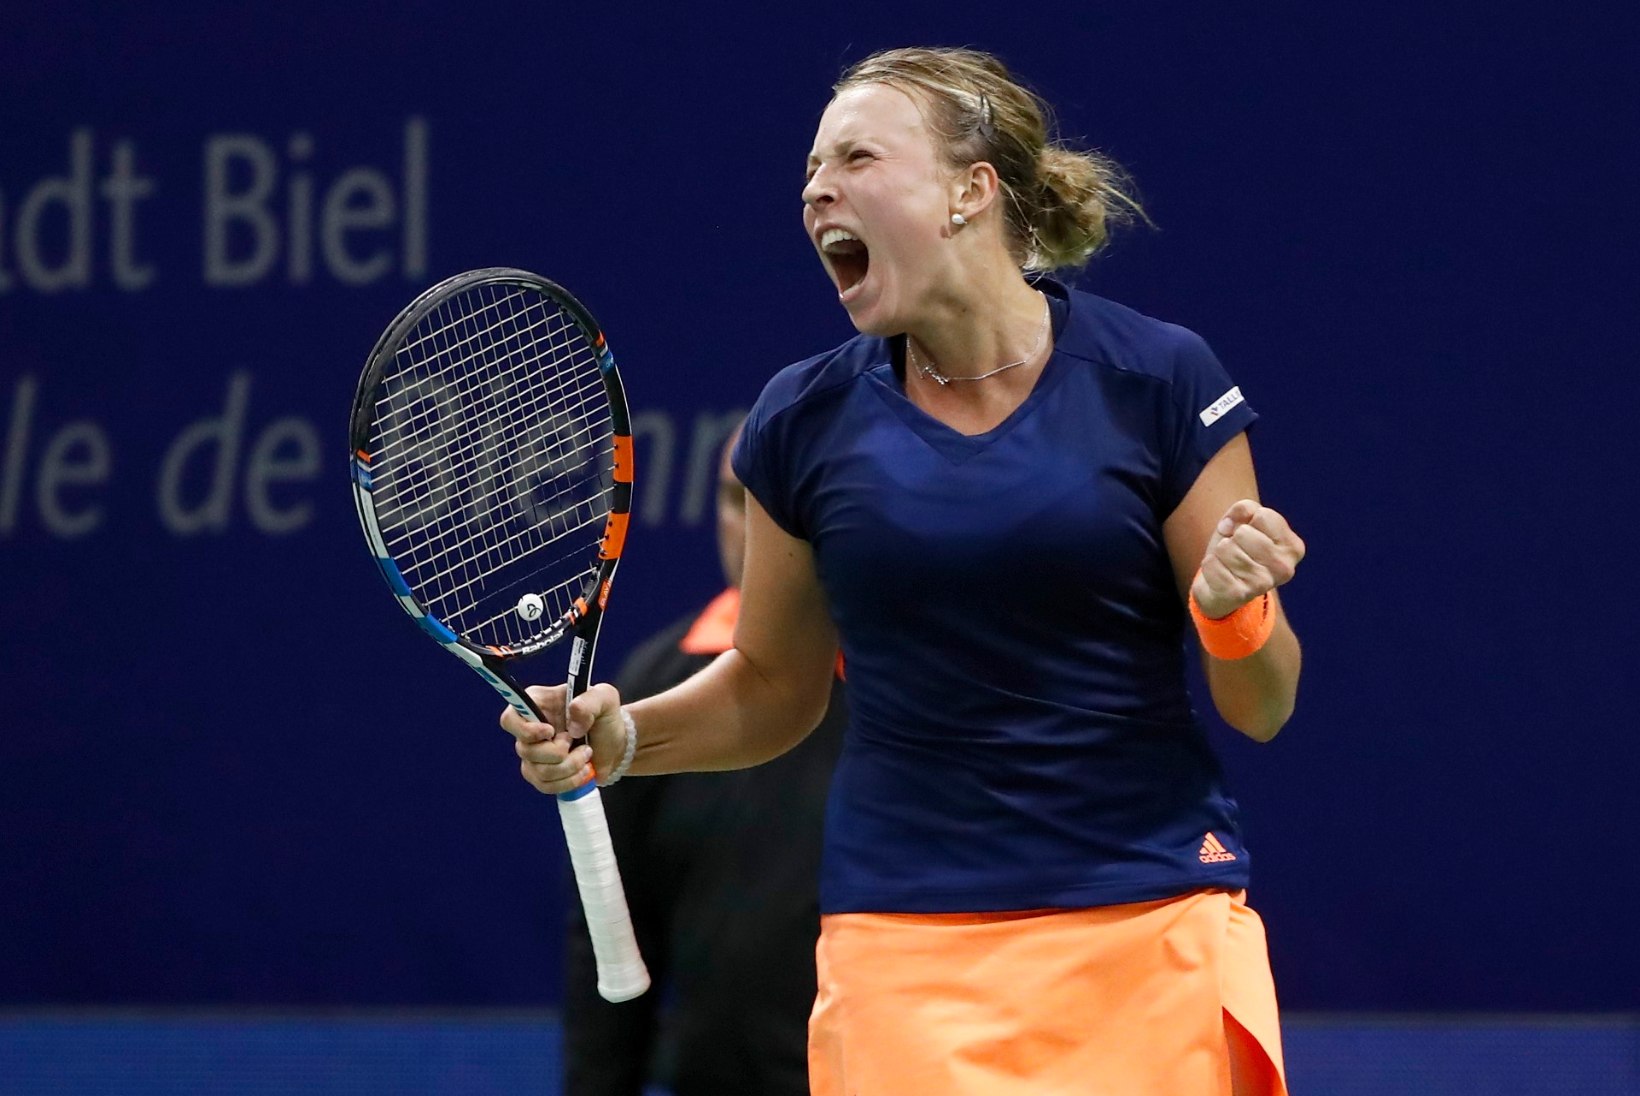 VINGE! Esmakordselt WTA-turniiri finaali jõudnud Kontaveit tegi maailmaedetabelis vägeva tõusu